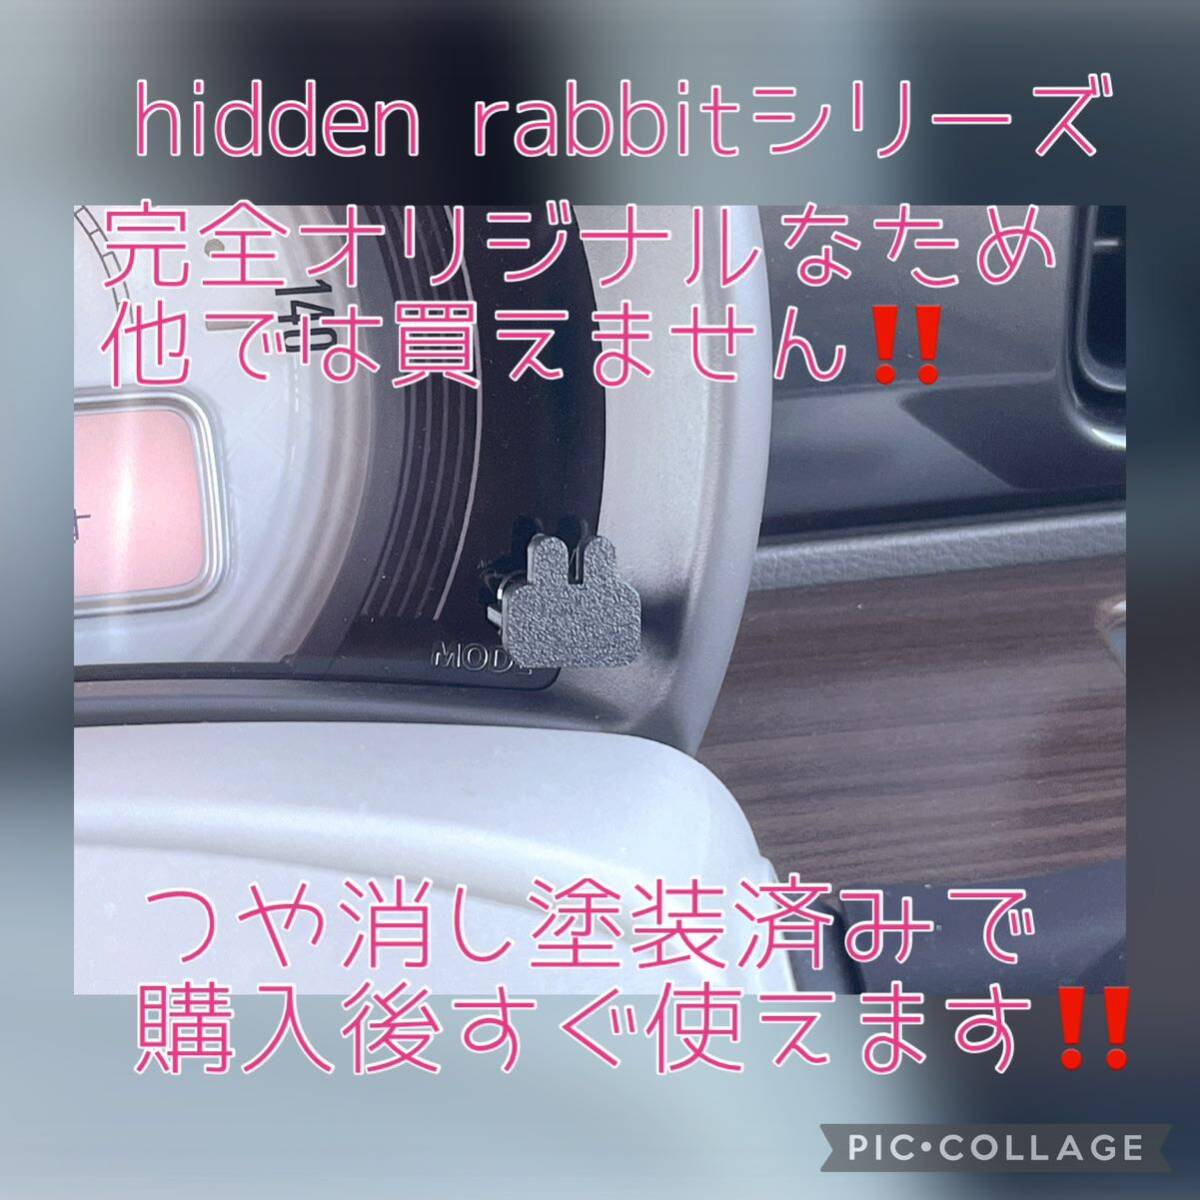 HE33Sラパン/ラパンLC専用うさぎトリップメーターキャップ2個セット hidden rabbit 8